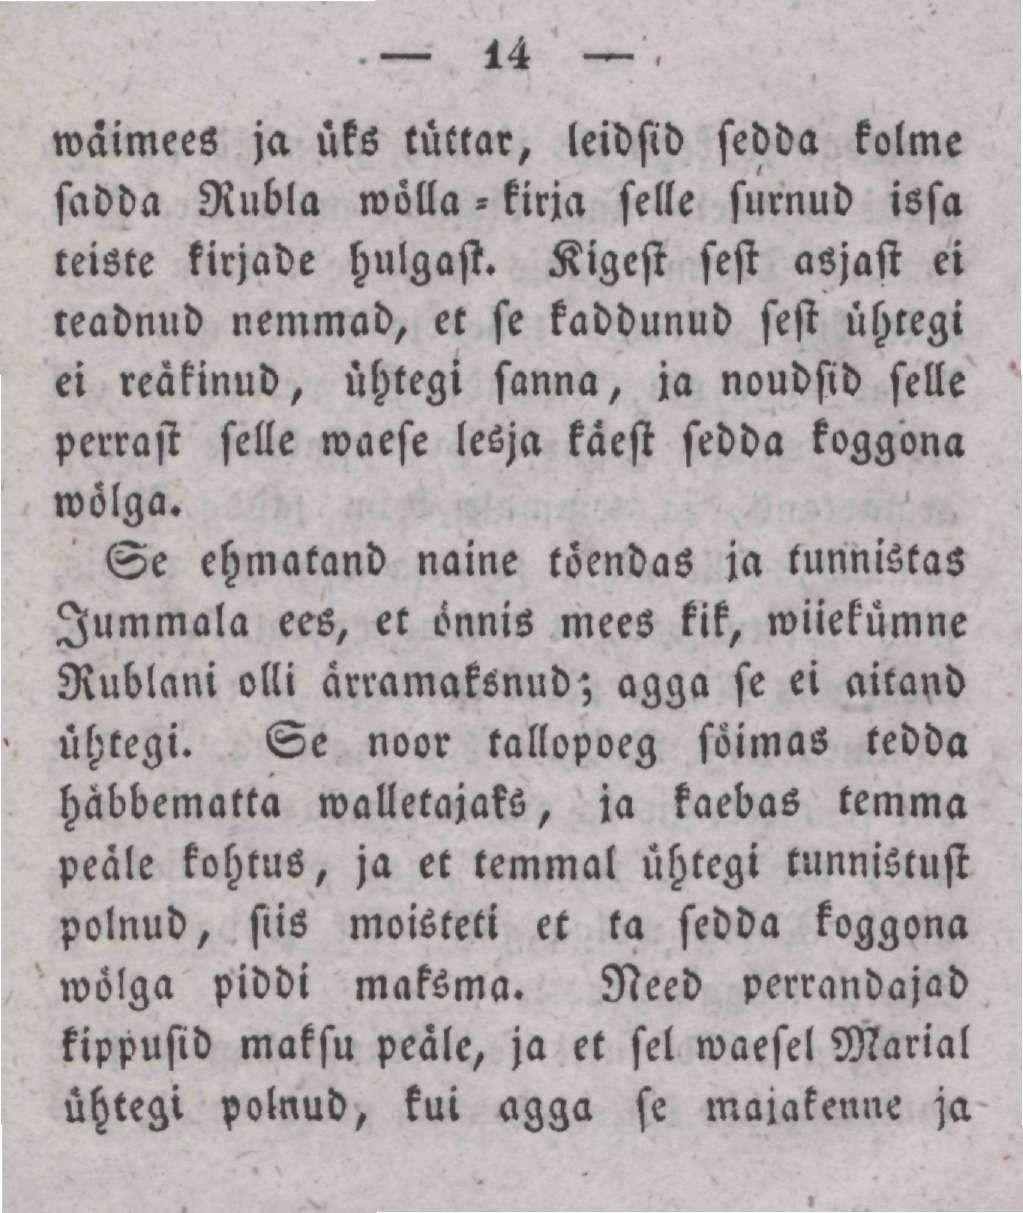 44 wäimees ja üks tüttar, leidsid sedda kolme sadda Rubla wõlla - kirja selle surnud issa teiste kirjade hulgast.